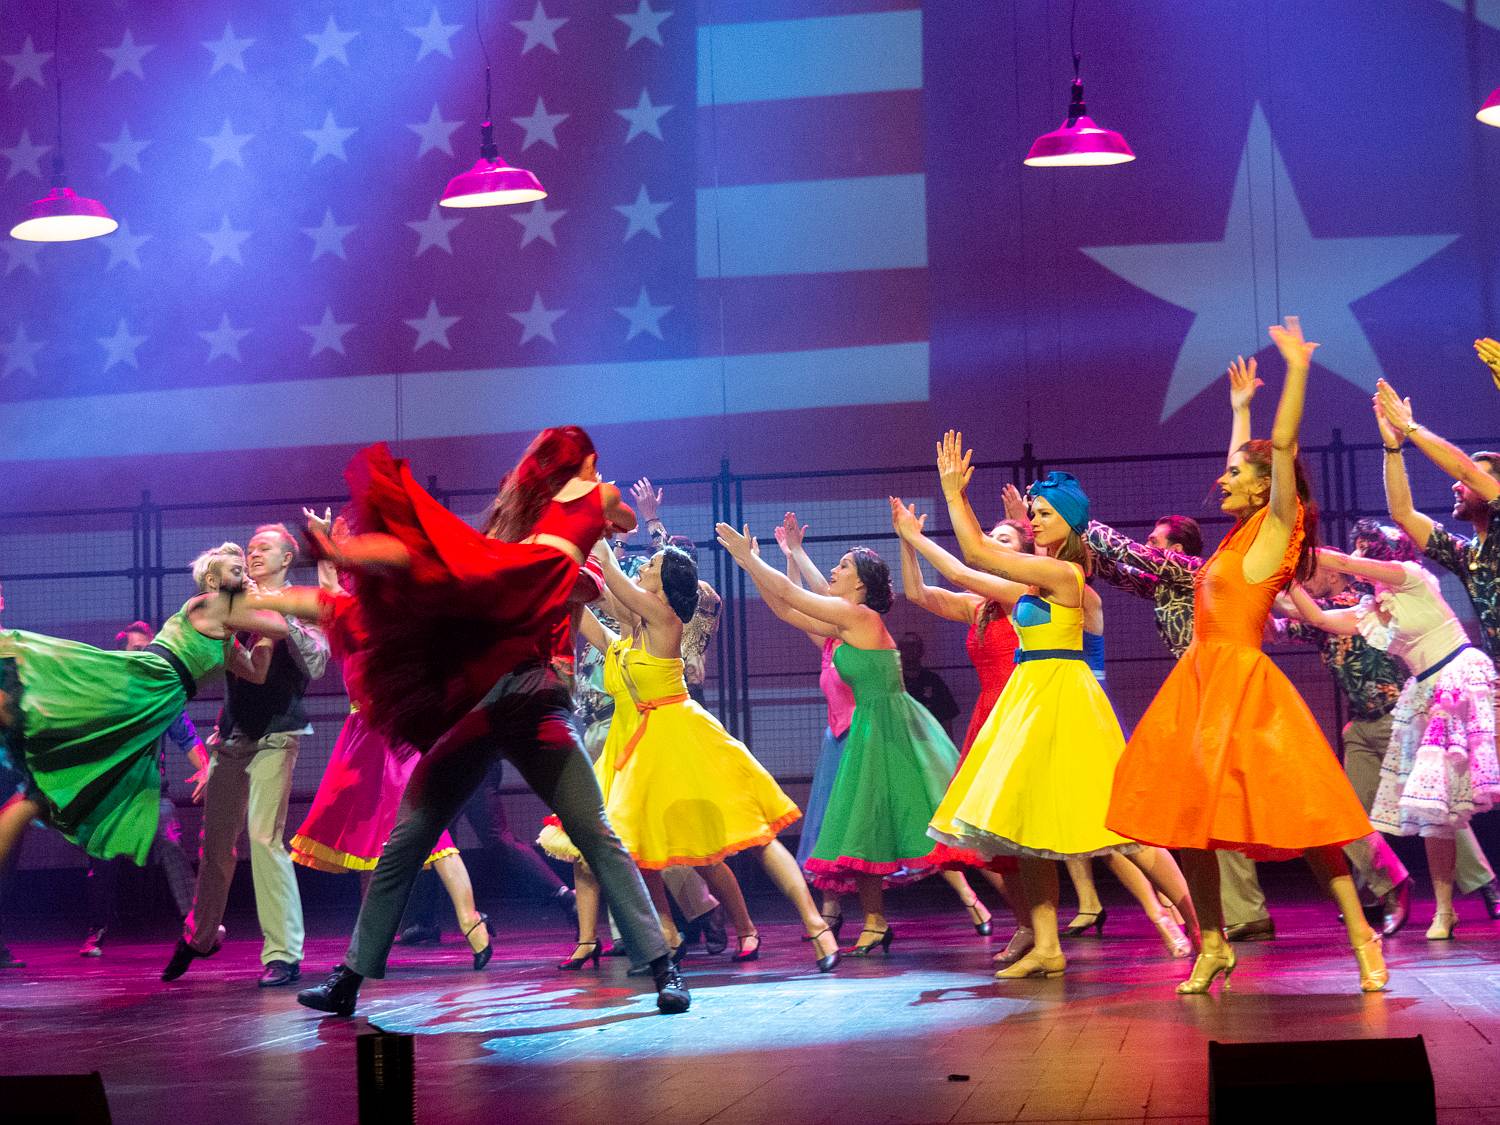 Tancerze ubrani w kolorowe ubrania tańczą na scenie